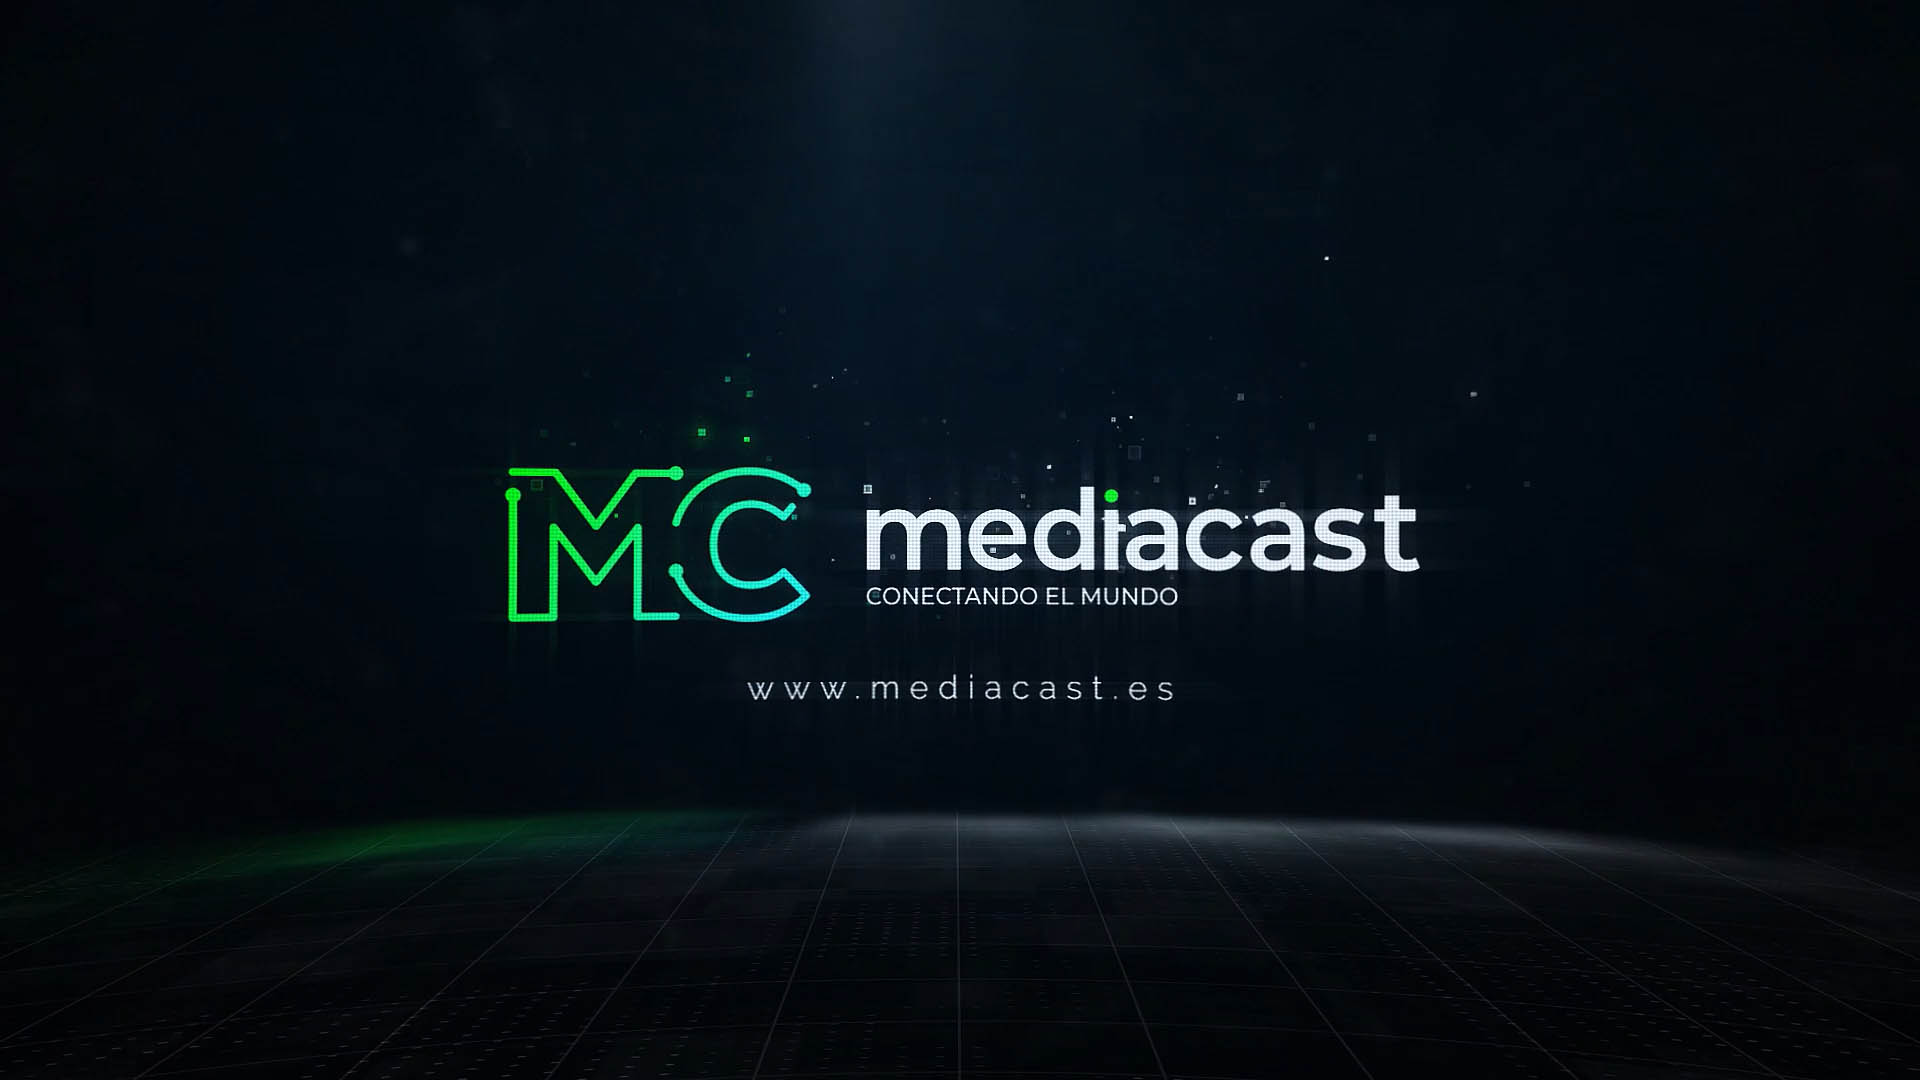 MEDIACAST Vimeo opener